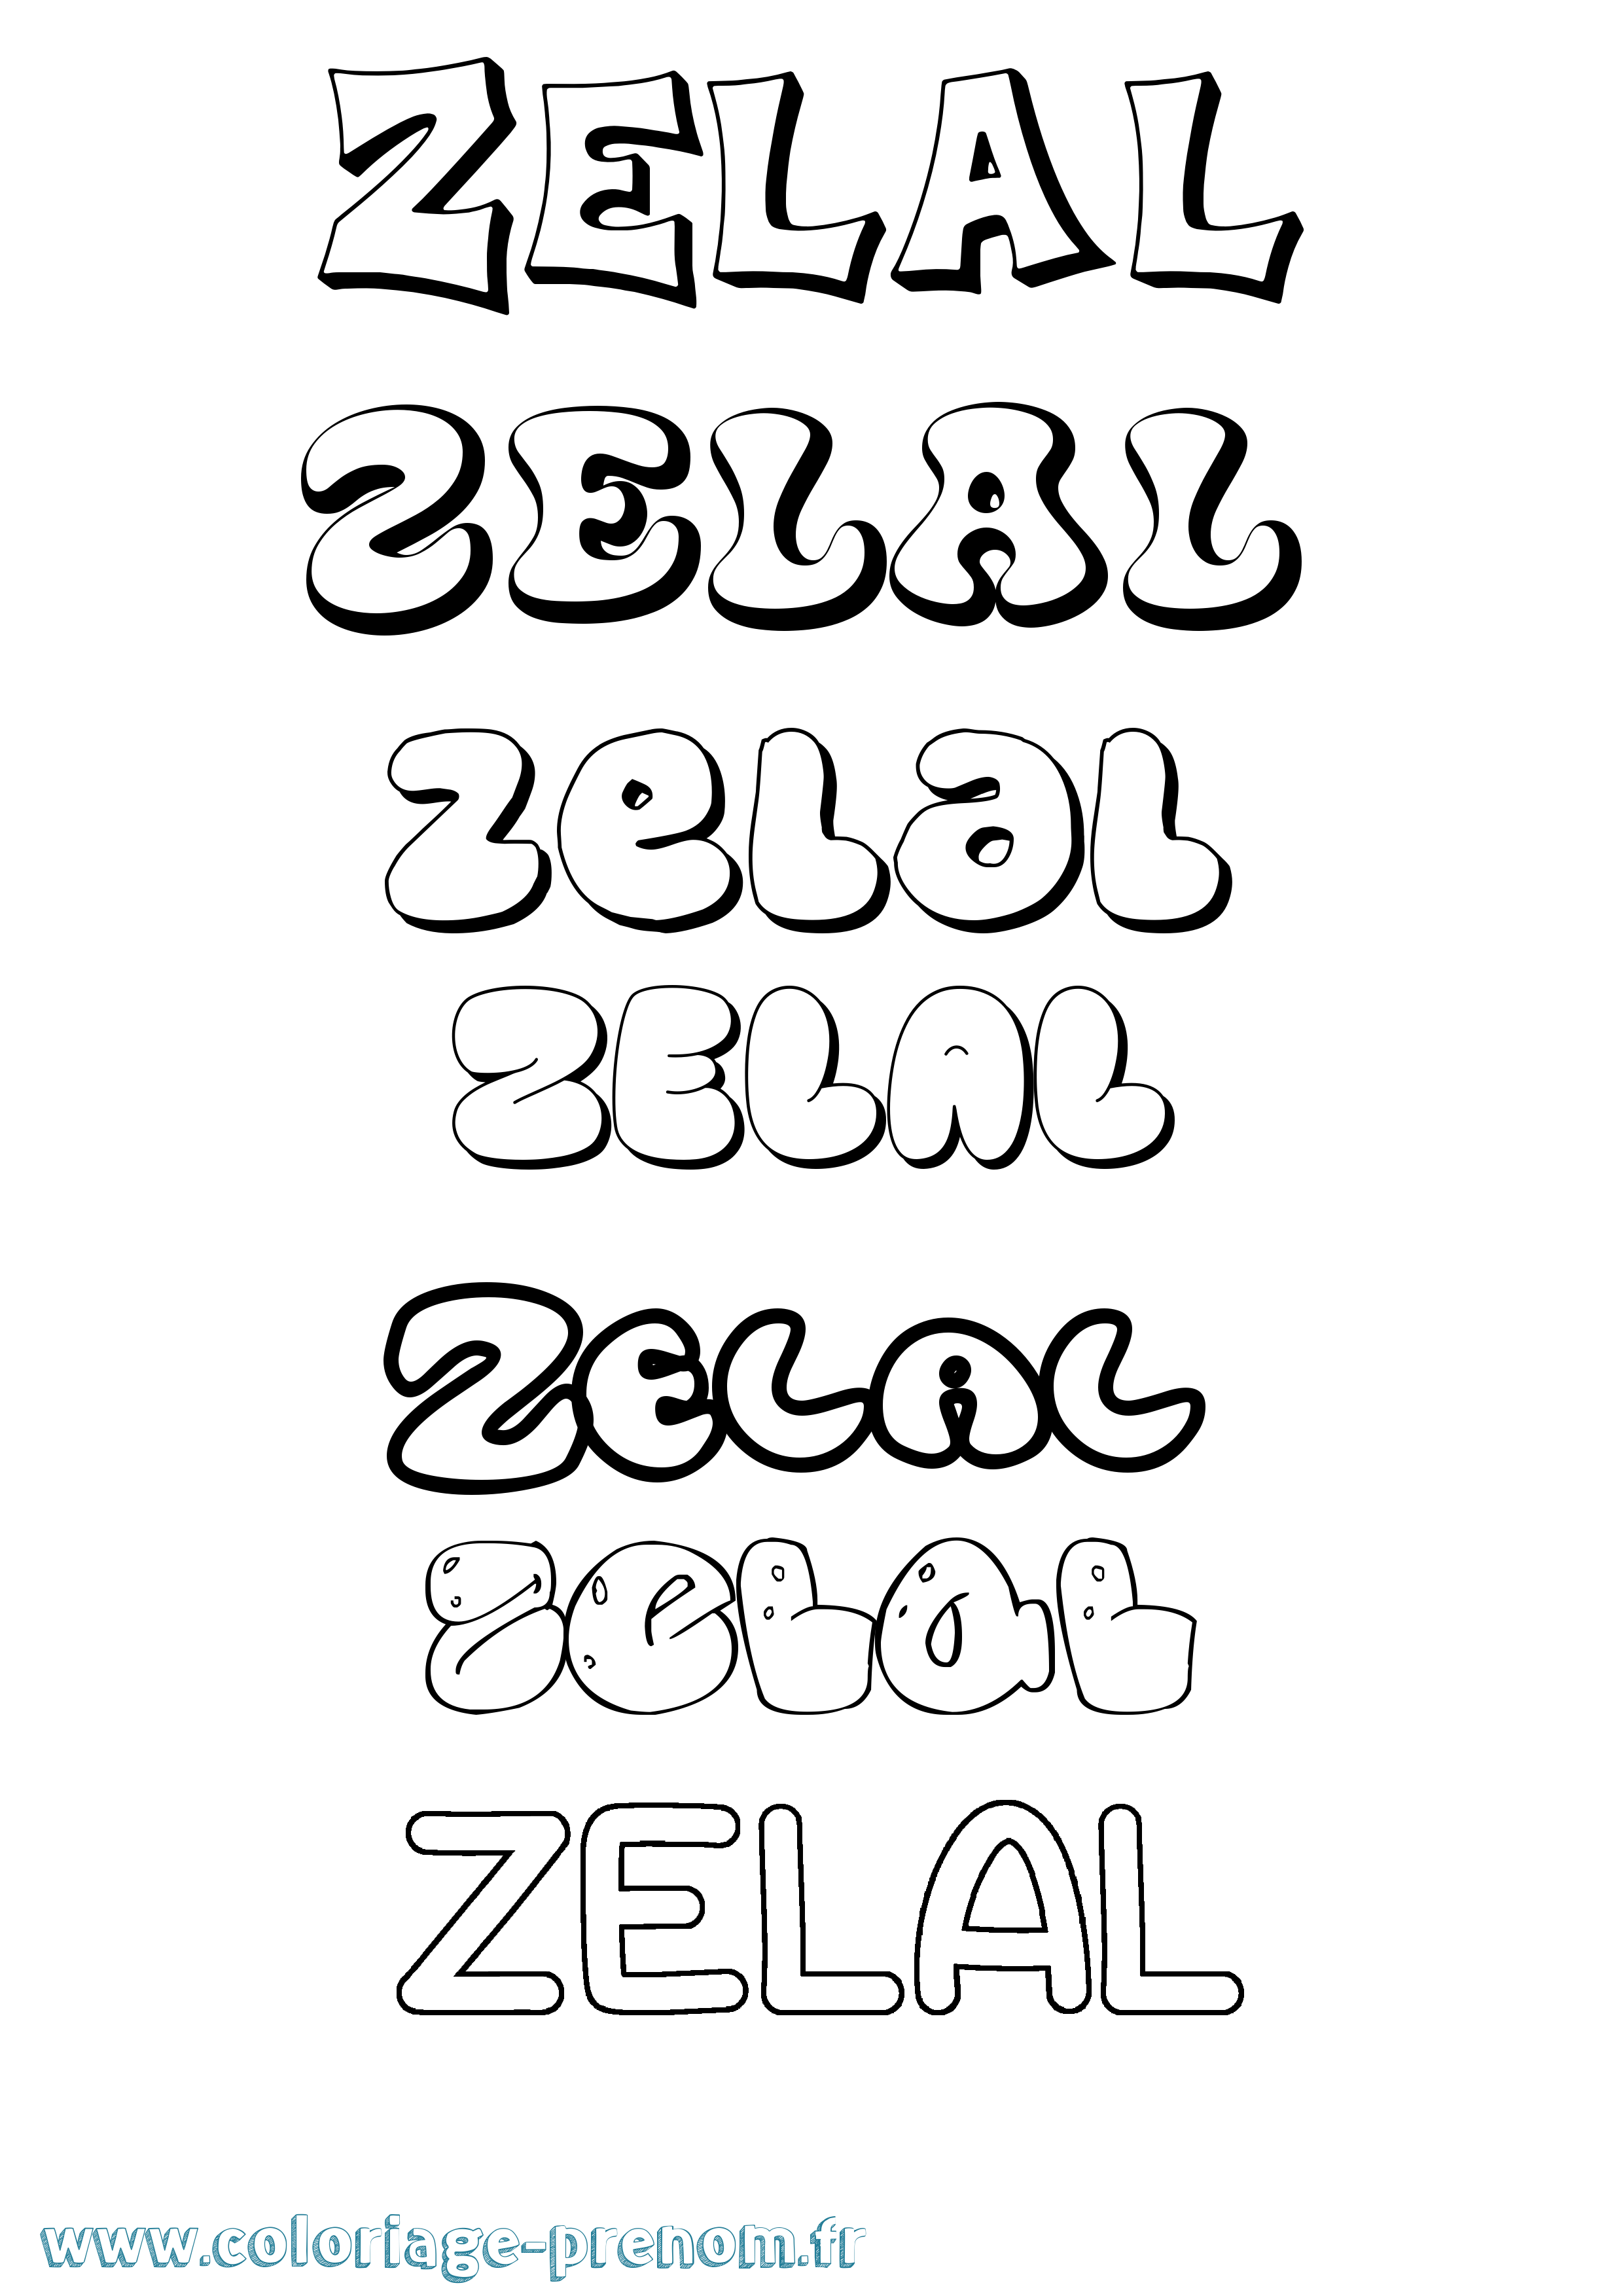 Coloriage prénom Zelal Bubble